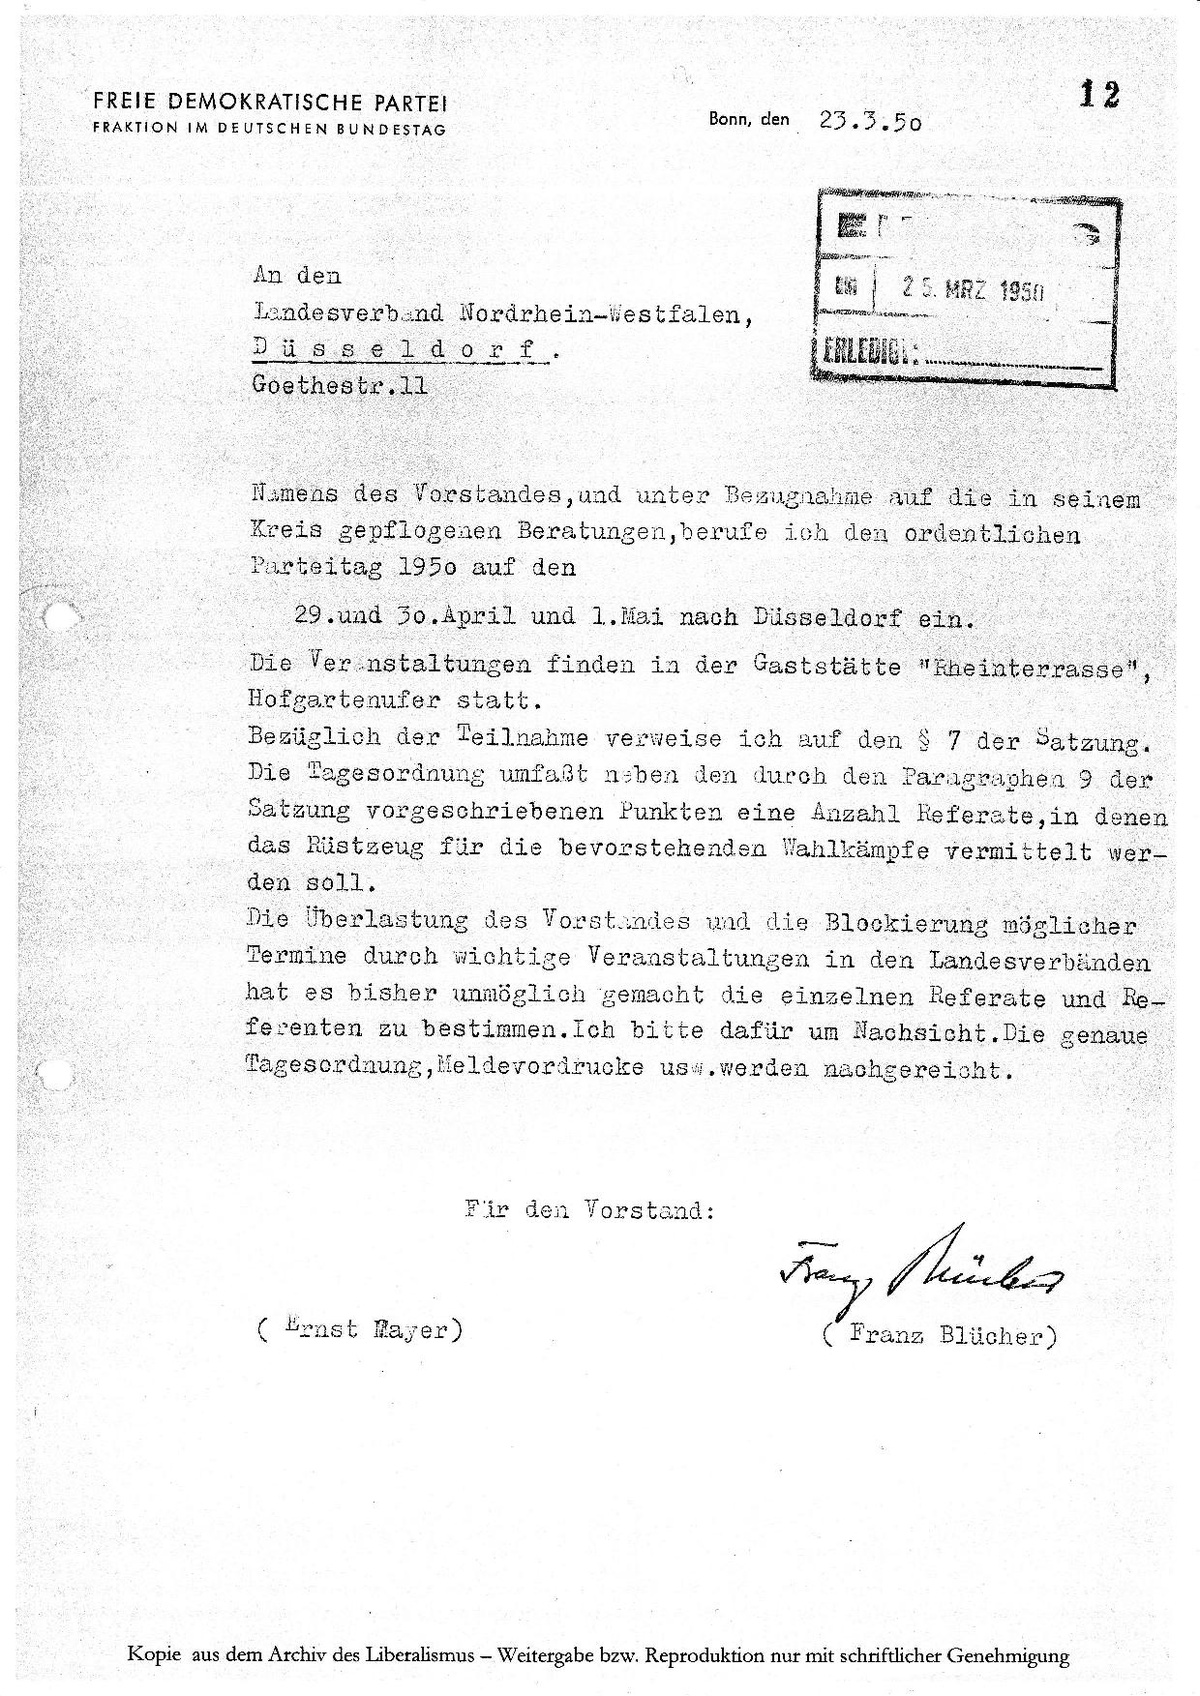 File Einladung Zum Parteitag 1950 In Dusseldorf Pdf Wikimedia Commons